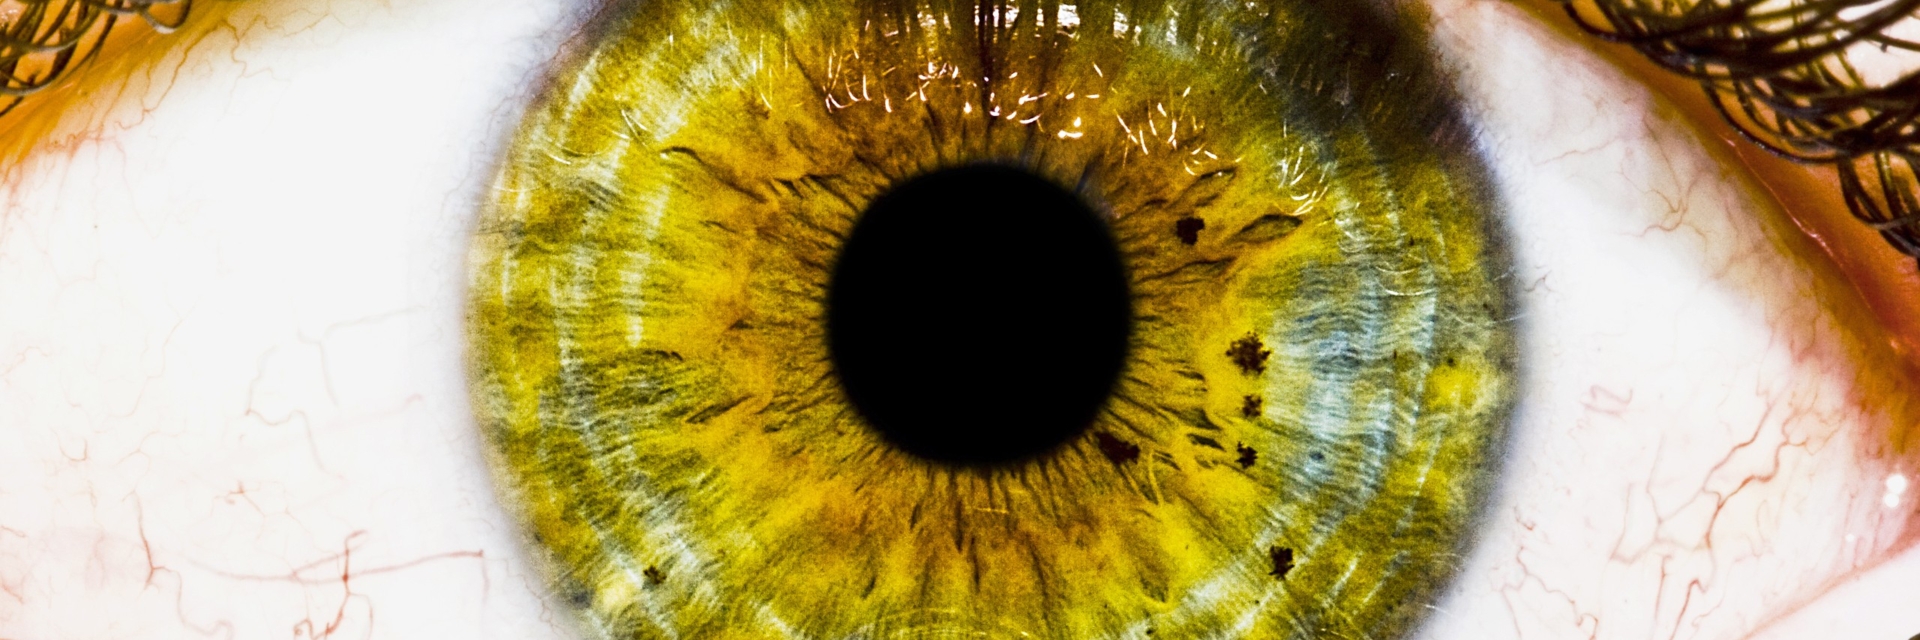 Желтый глаз 12. Зрачок глаза PNG. Коричневые ресницы на глазах.